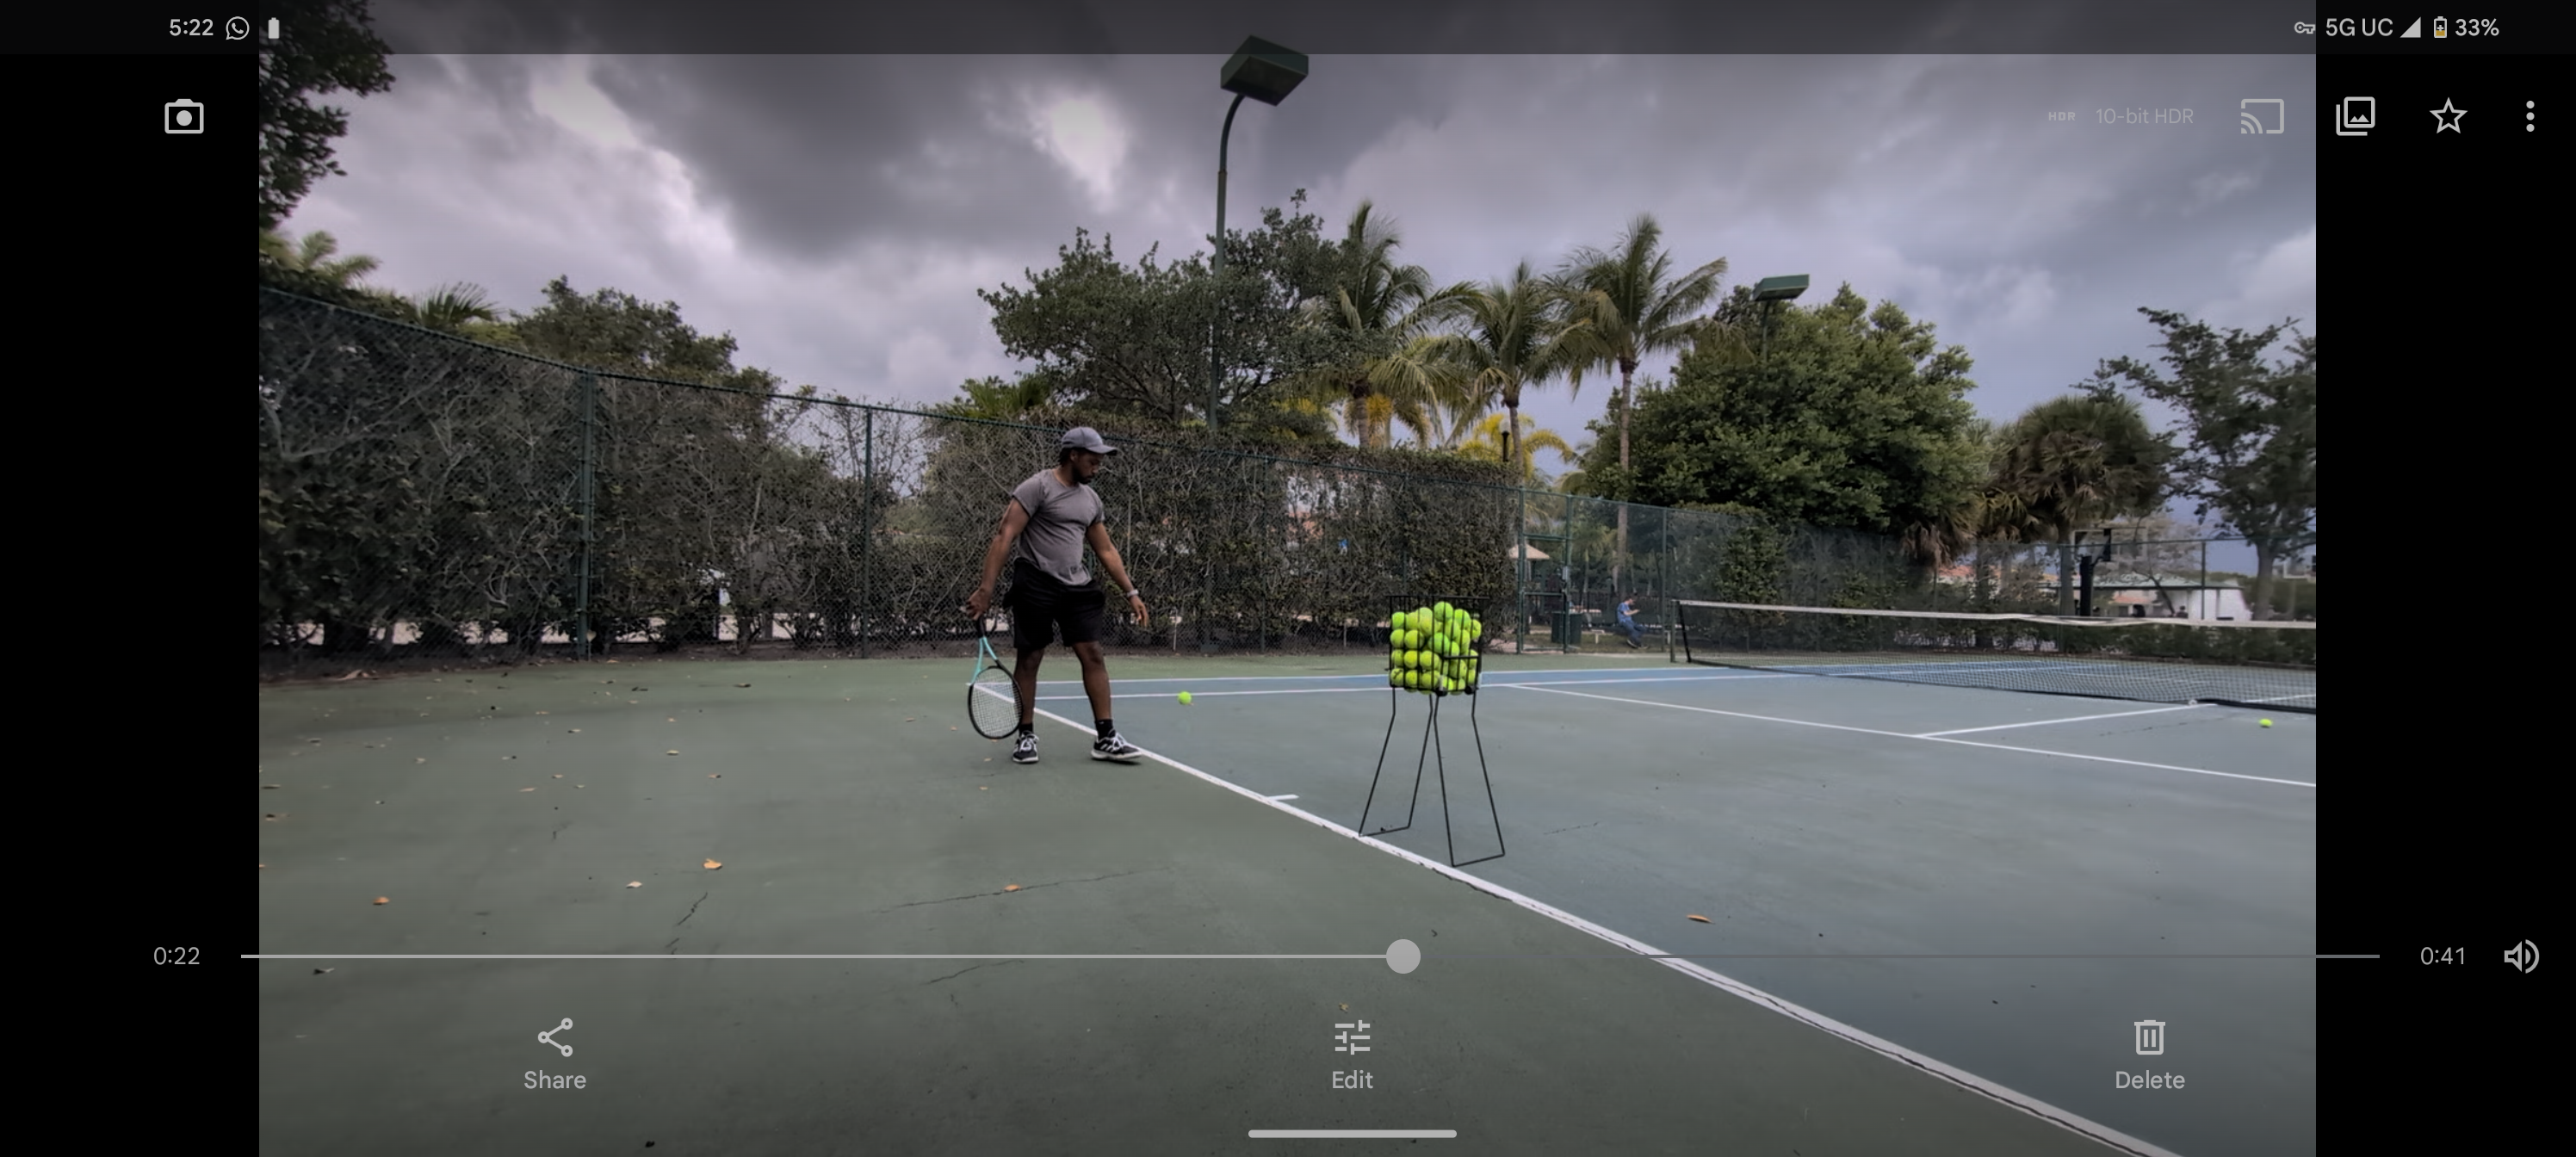 Jon H. teaches tennis lessons in Riviera Beach, FL